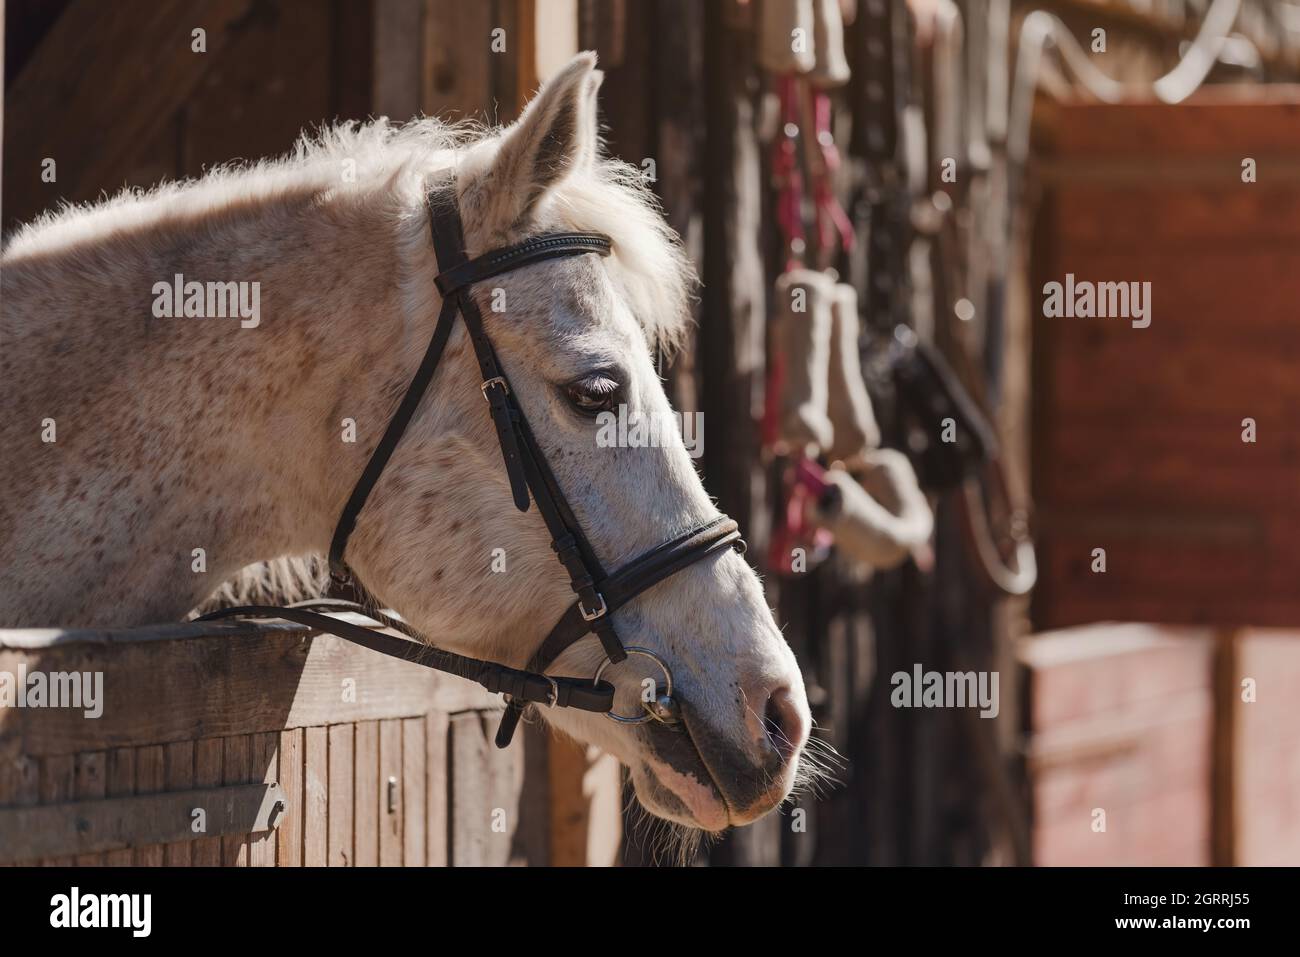 Cavallo arabo bianco con macchie marroni, dettaglio - solo testa visibile fuori dalla scatola di scuderie in legno Foto Stock